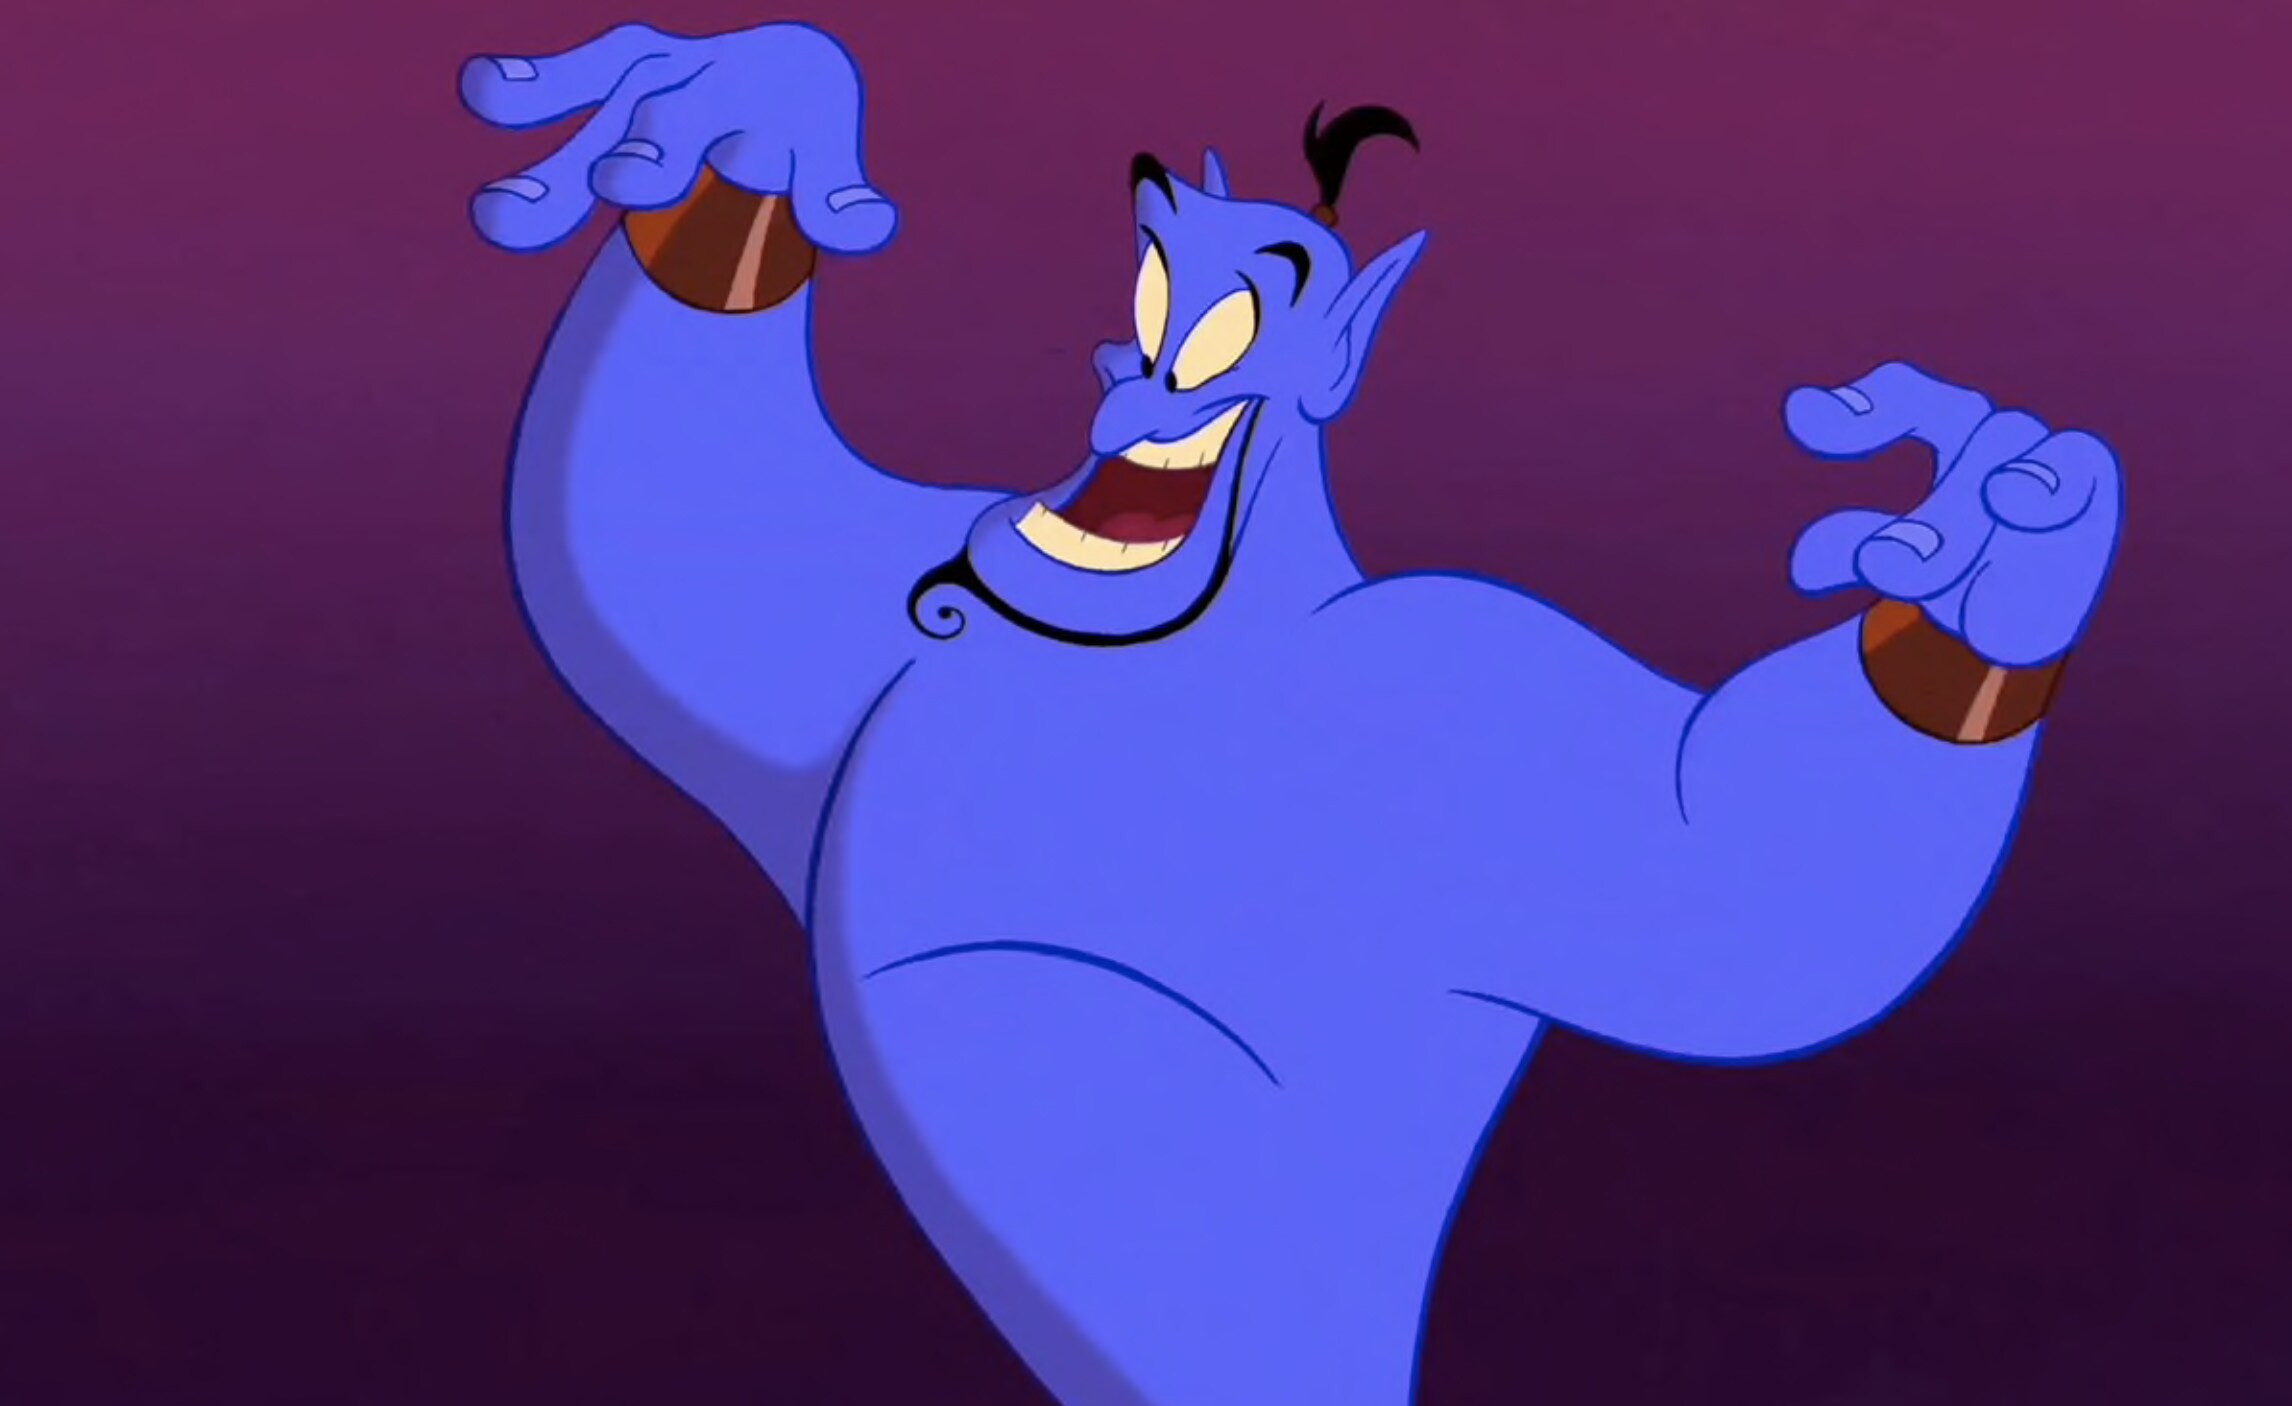 Genie from Aladdin.